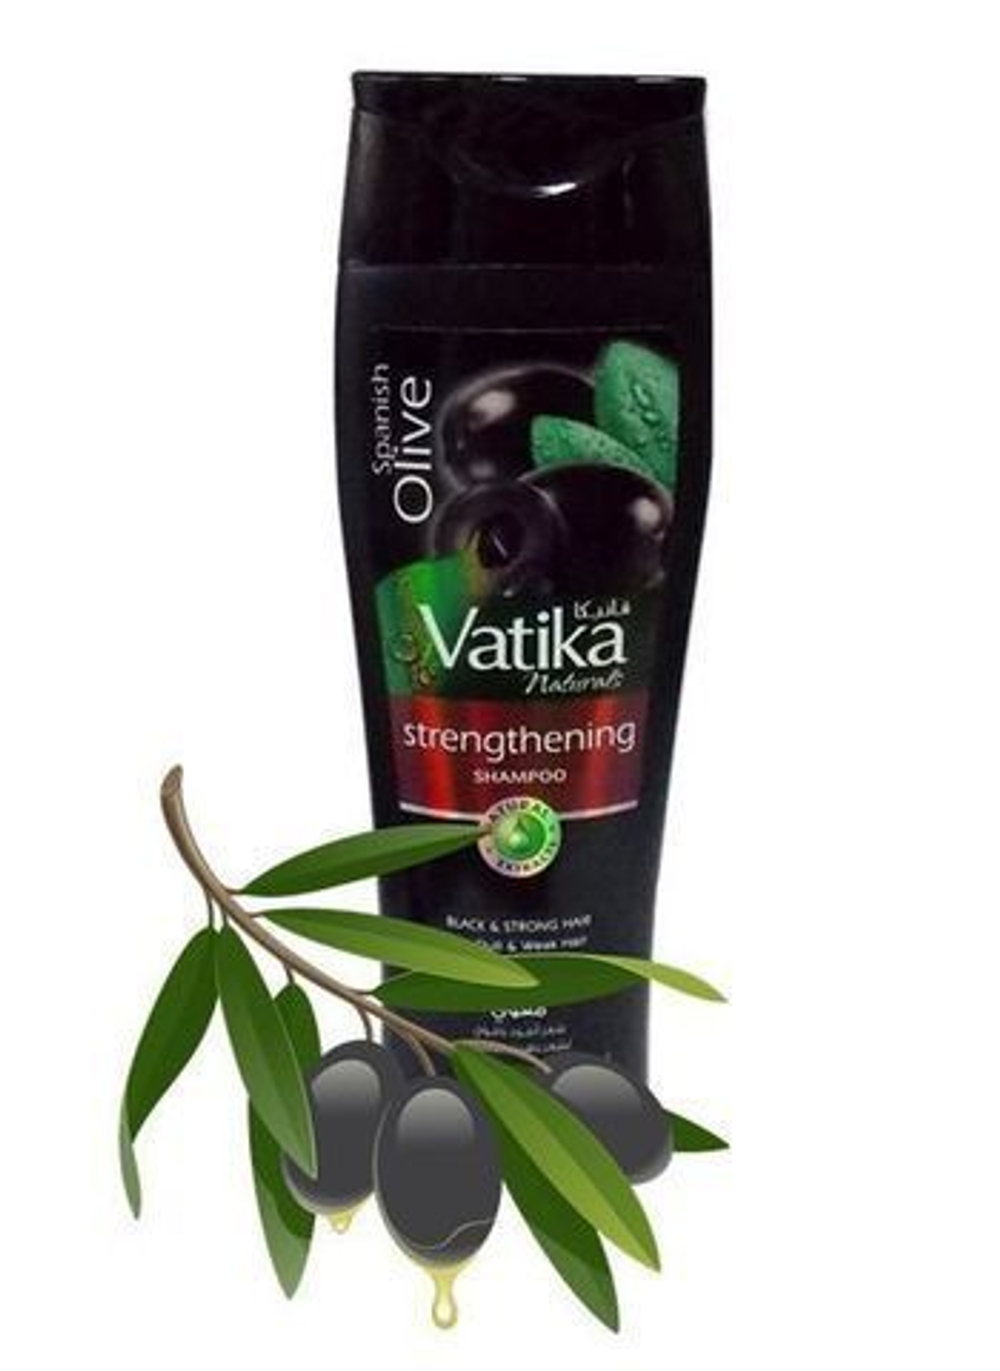 Шампунь Dabur Vatika Strengthening Spanish Olive (Black & Strong hair) Укрепление с испанской оливой (Черные и сильные волосы) 200 мл